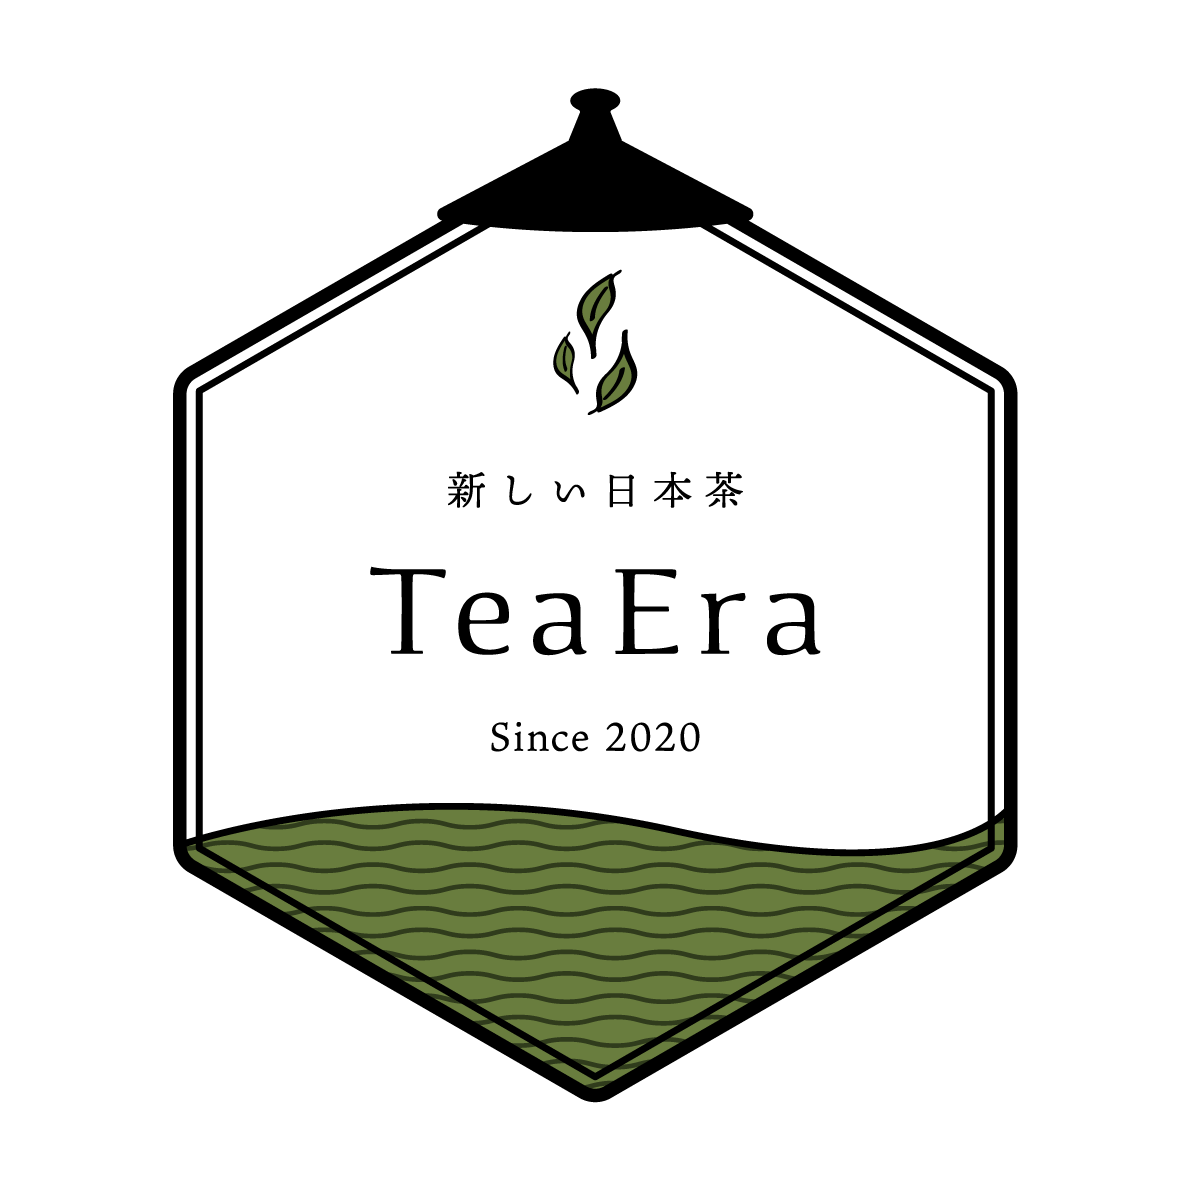 Tea Era